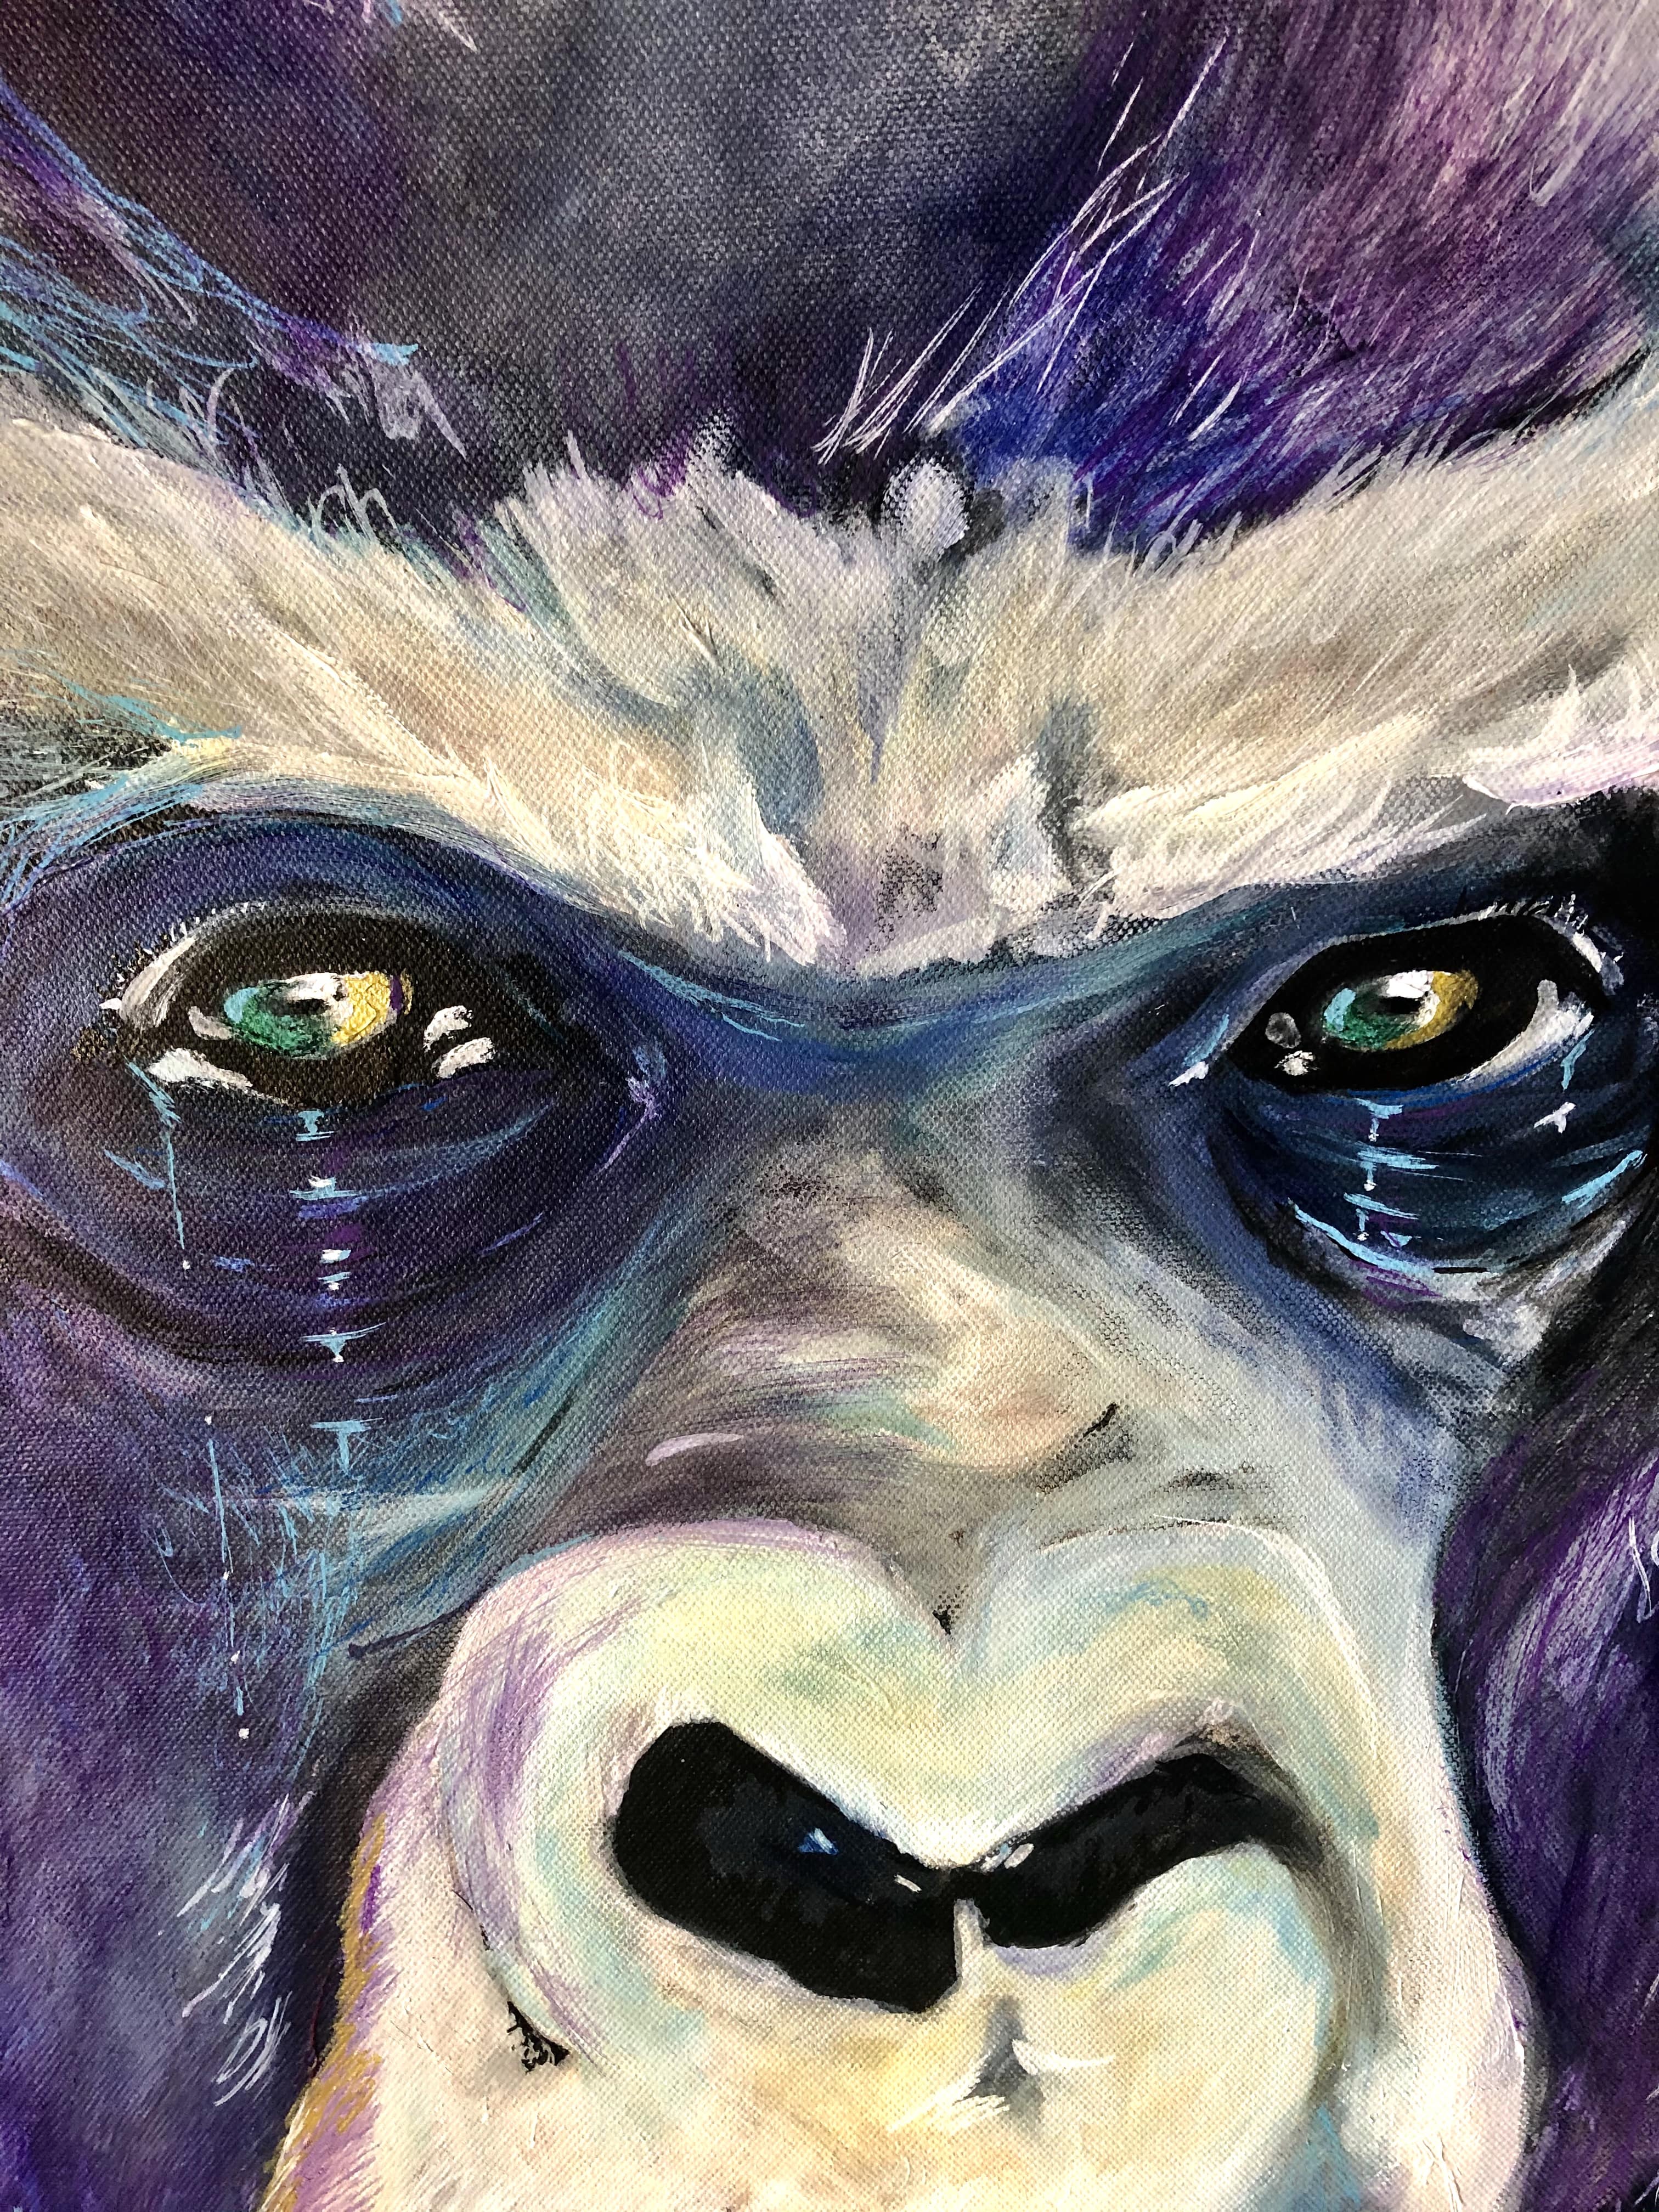 "Gorilla", 2020. 2 image